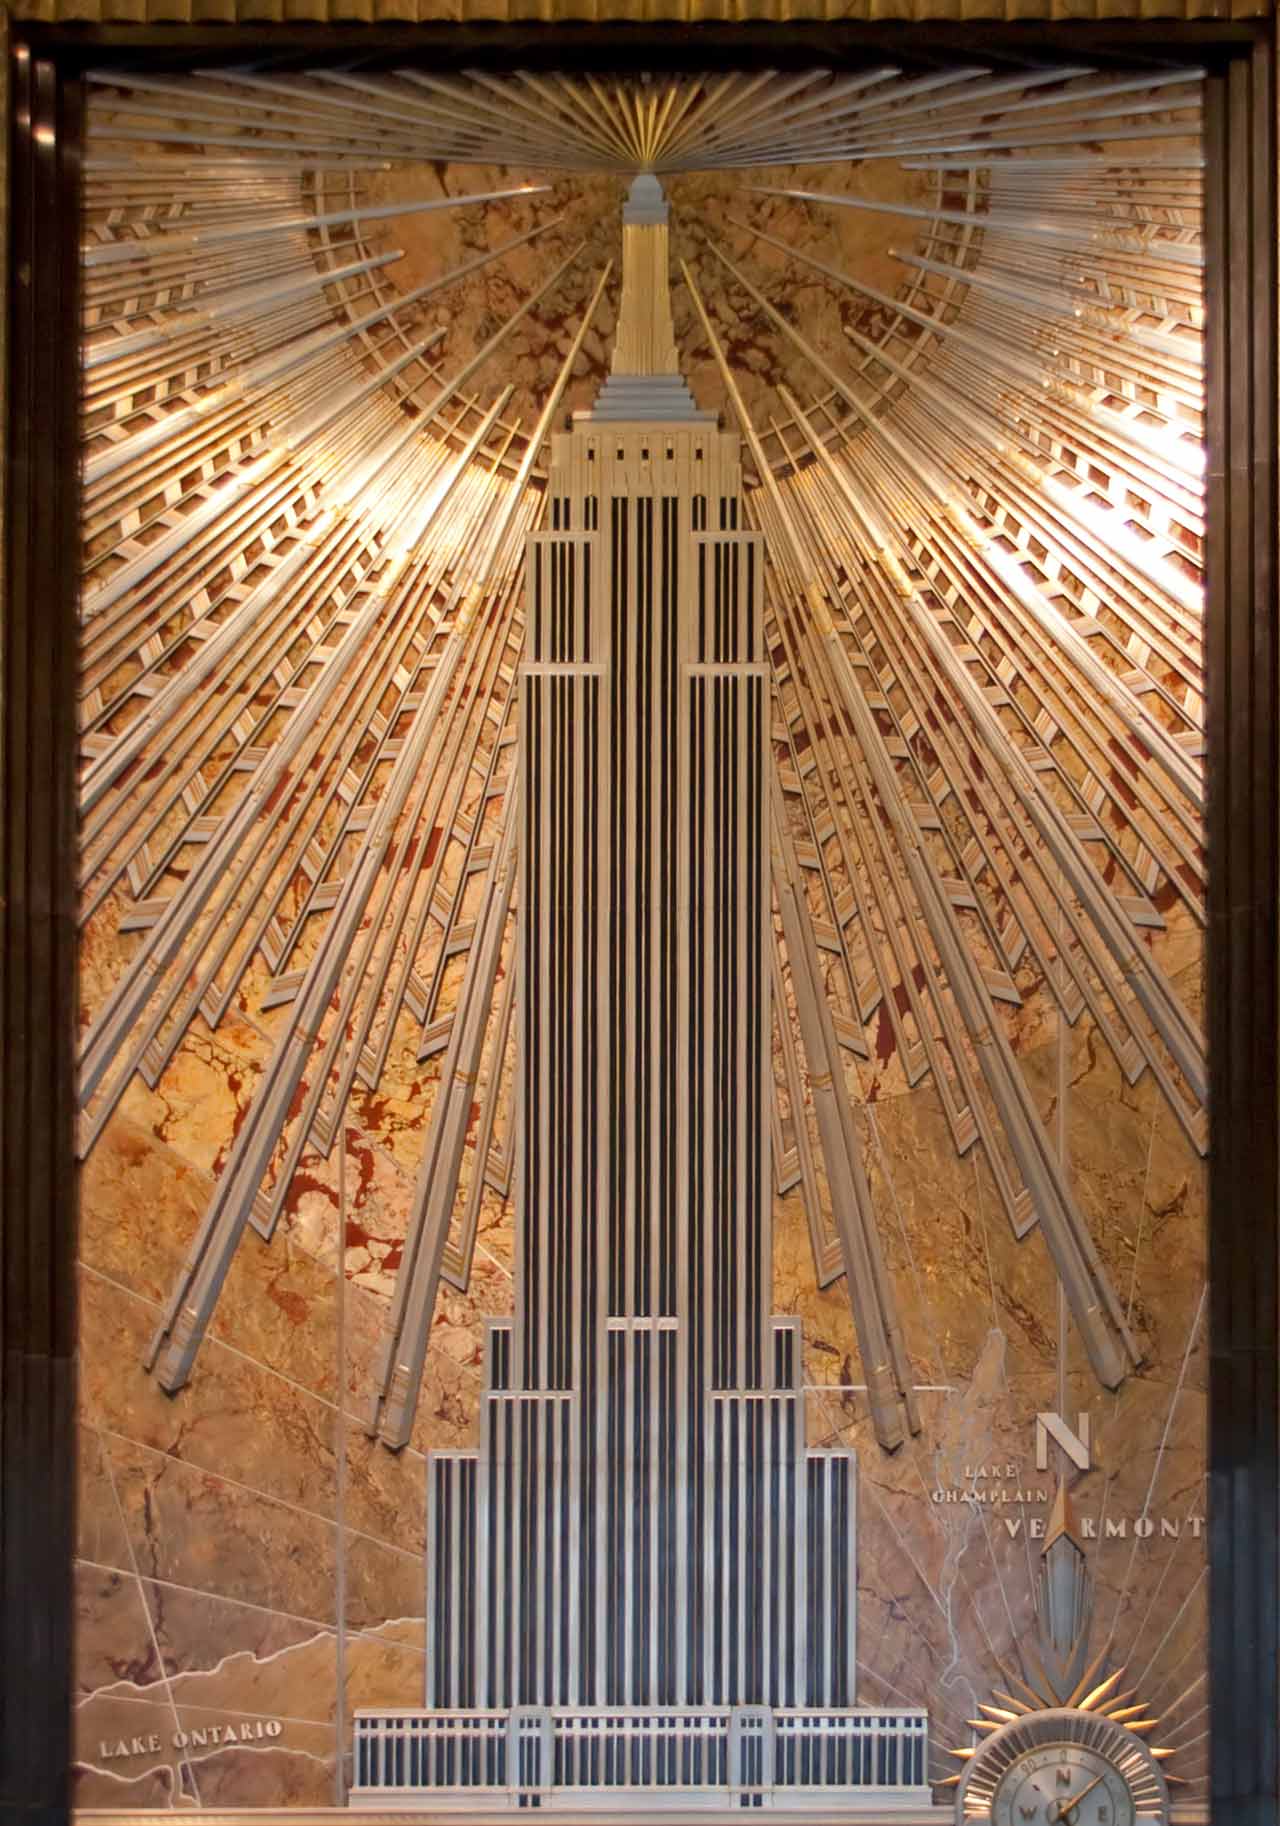 Empire state building: lobby mural © tony hisgett